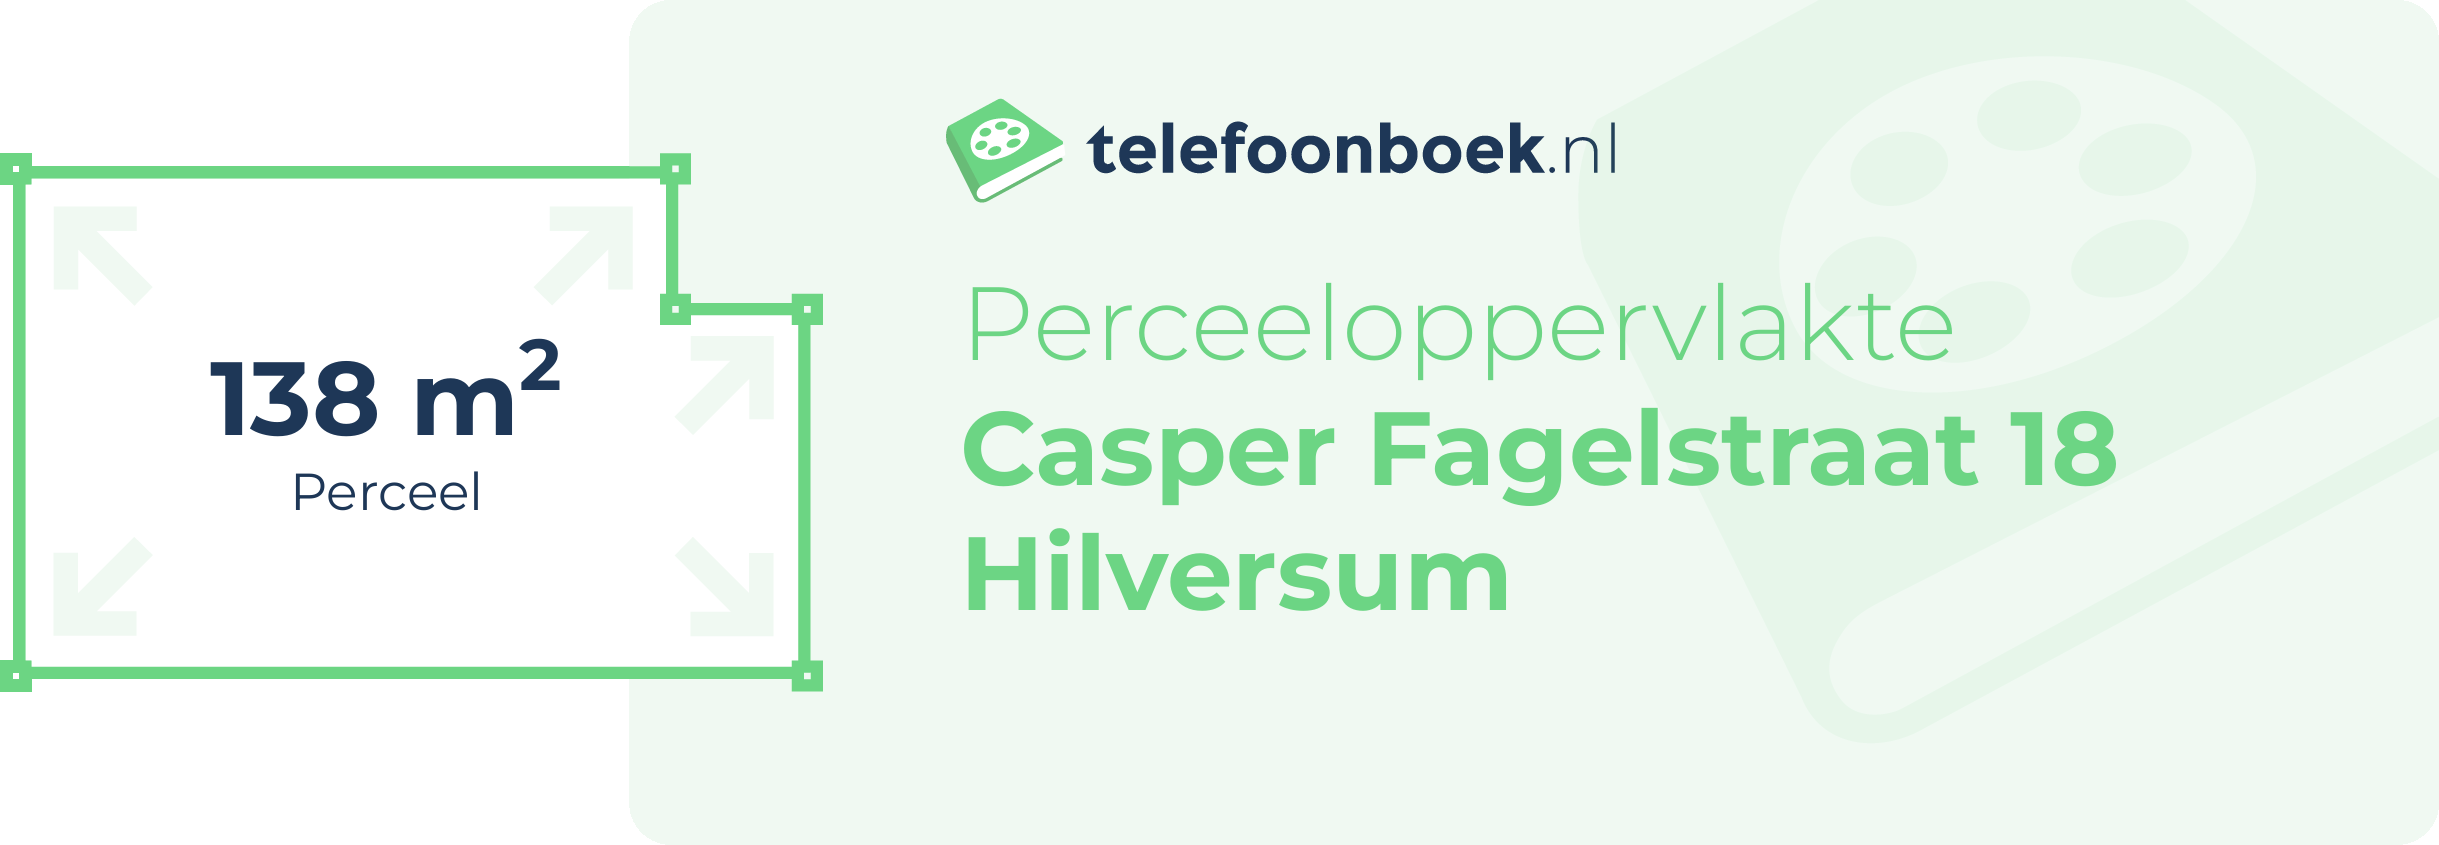 Perceeloppervlakte Casper Fagelstraat 18 Hilversum